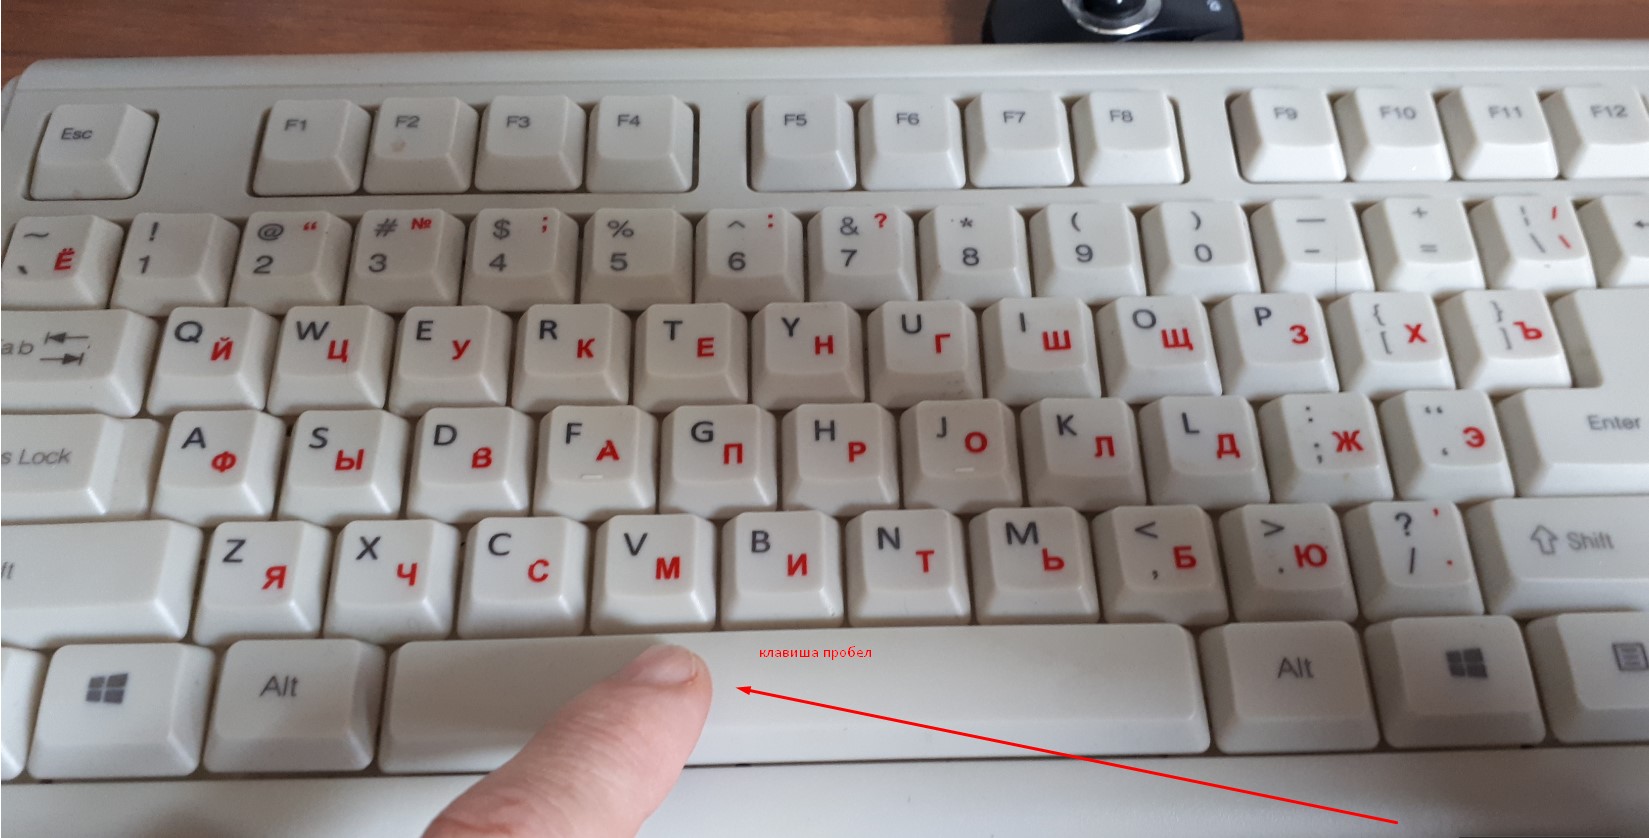 Клавиша "Пробел или SPAСE" на клавиатуре ПК или ноутбука.